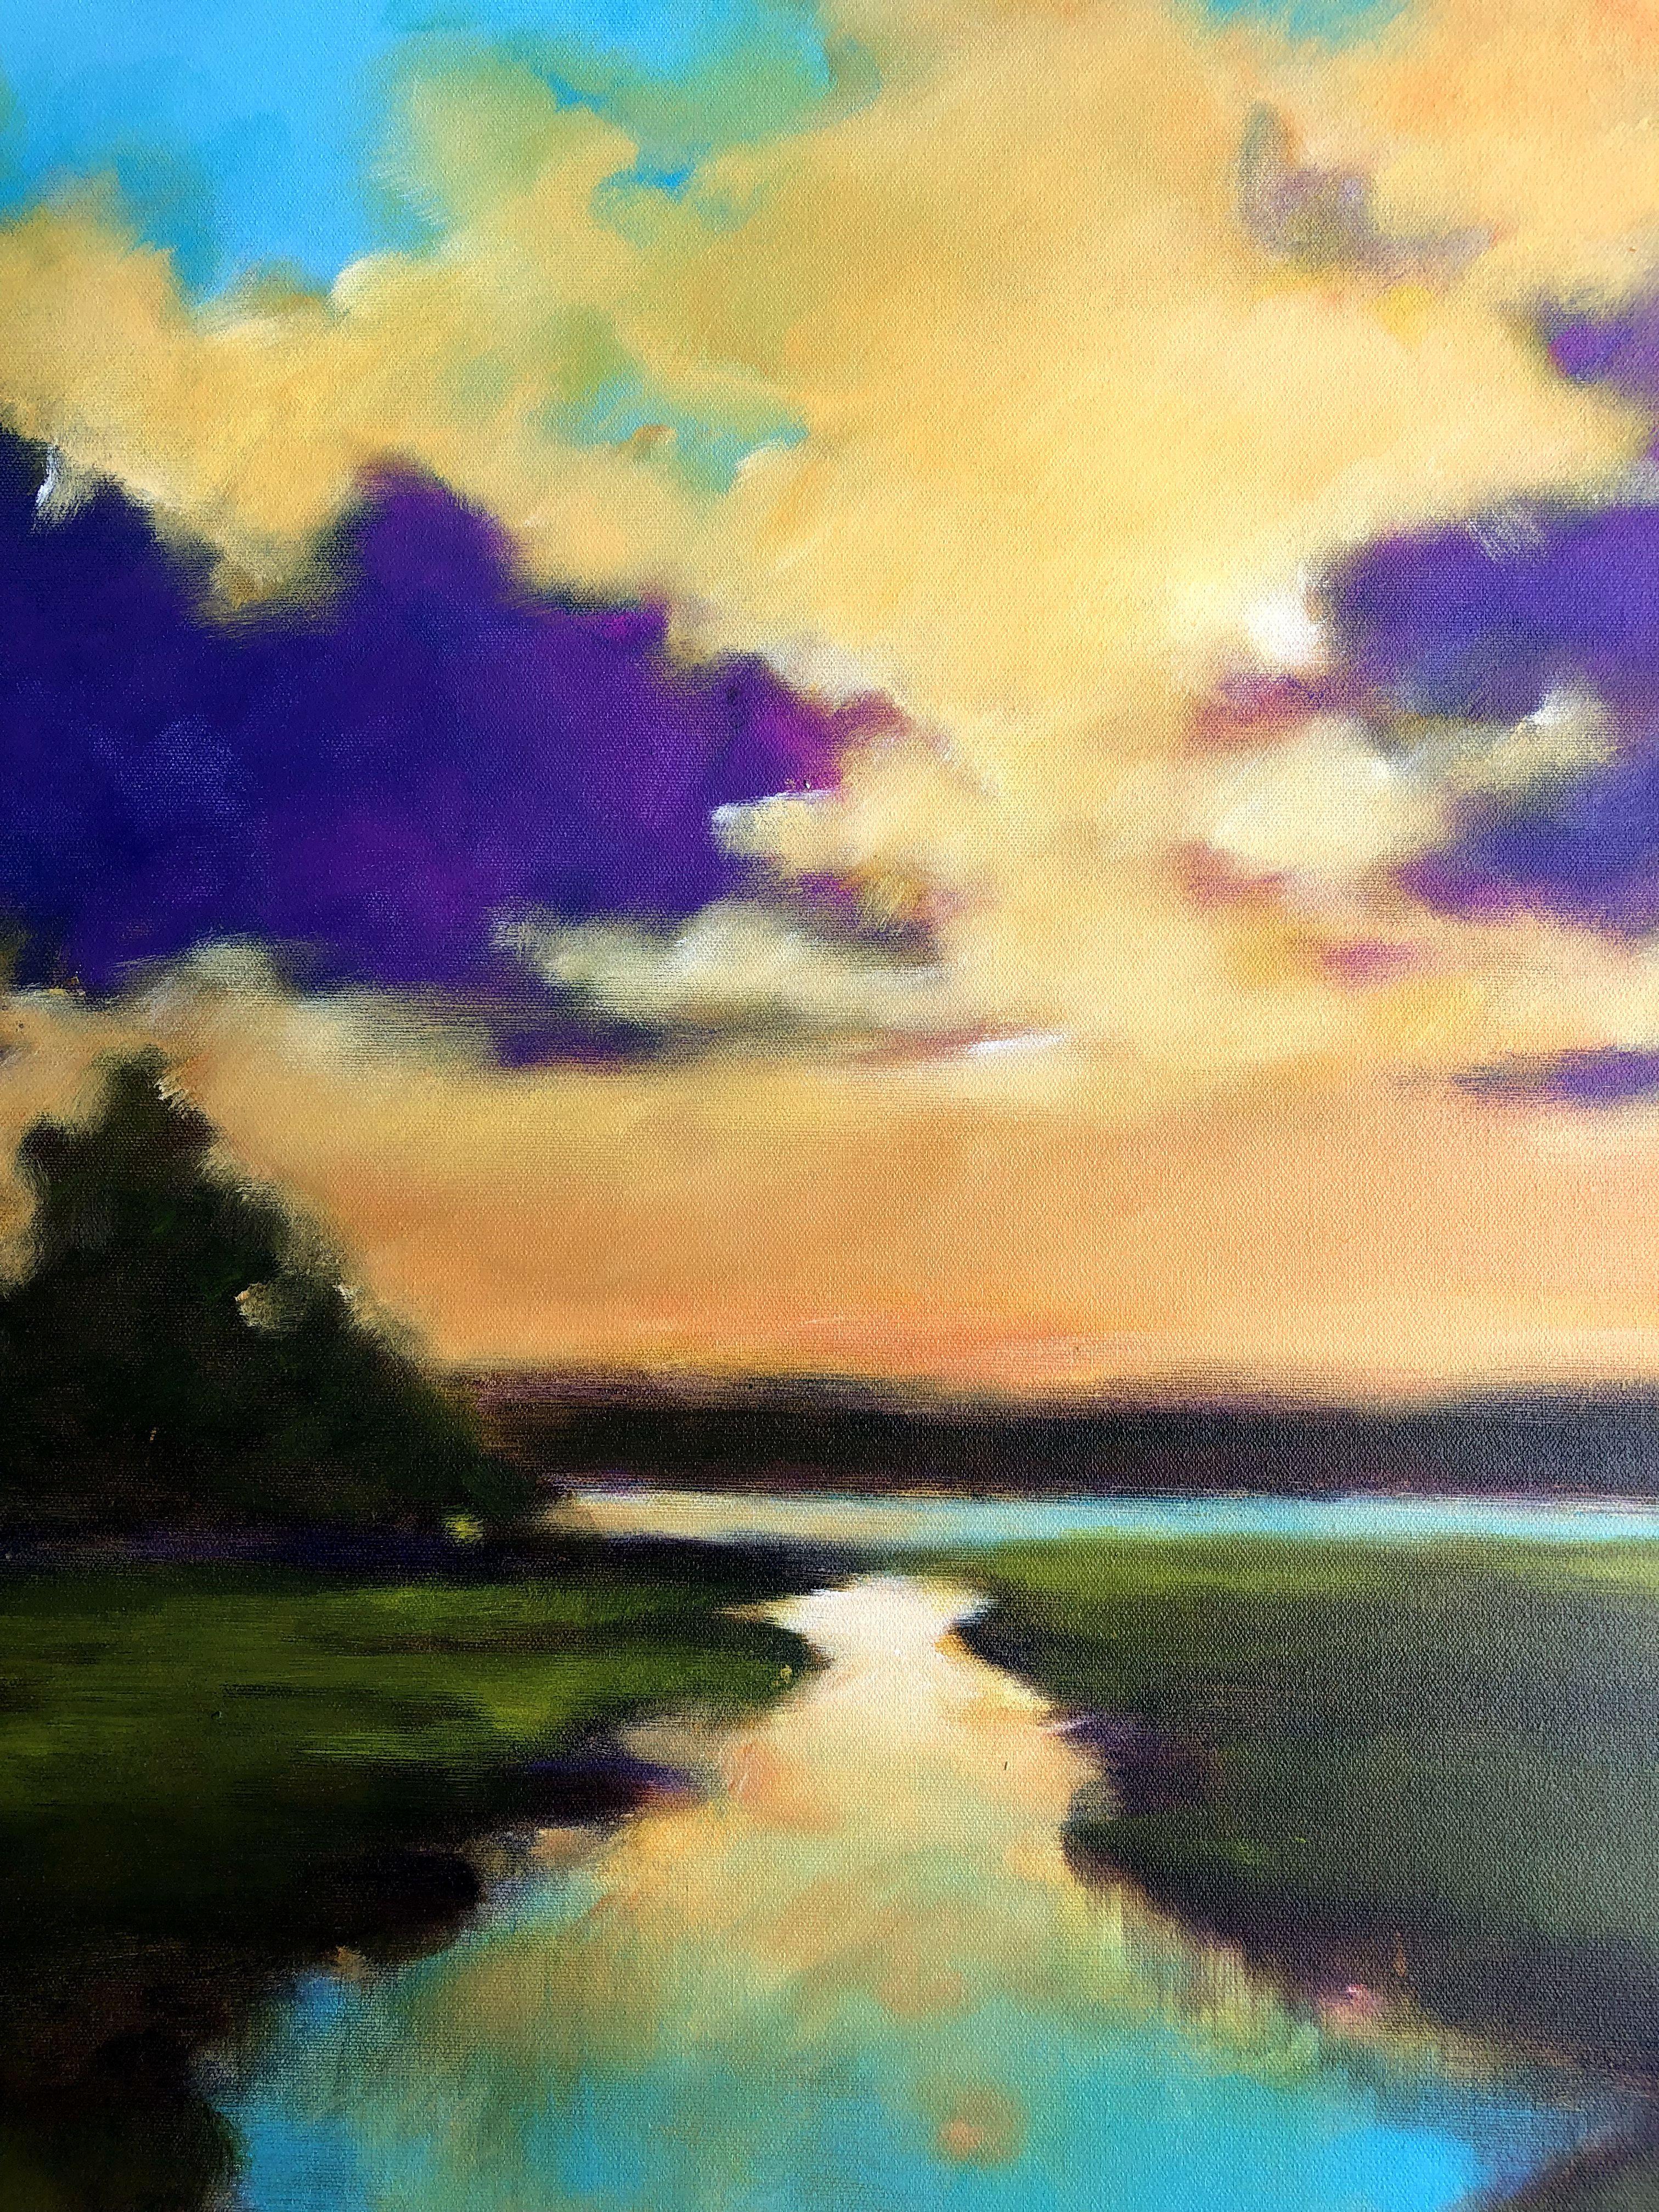 Coucher de soleil sur la rivière, peinture, acrylique sur toile - Impressionnisme Painting par Filomena Booth